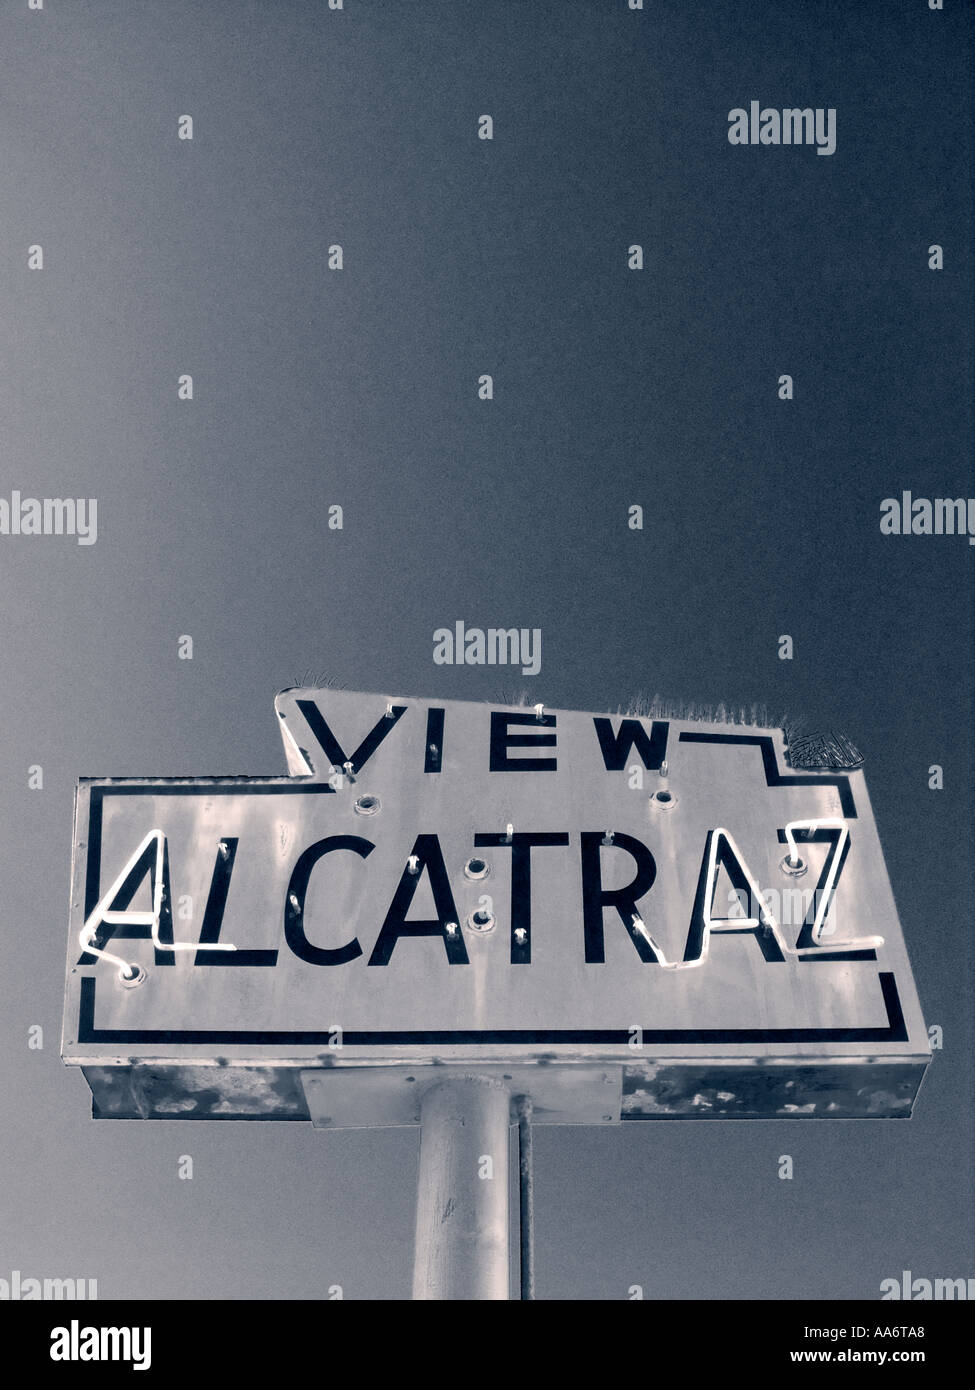 ALCATRAZ TOUR TRIP SIGN Retro weatherbeaten sign at ferry terminal to Alcatraz island prison San Francisco California USA Stock Photo